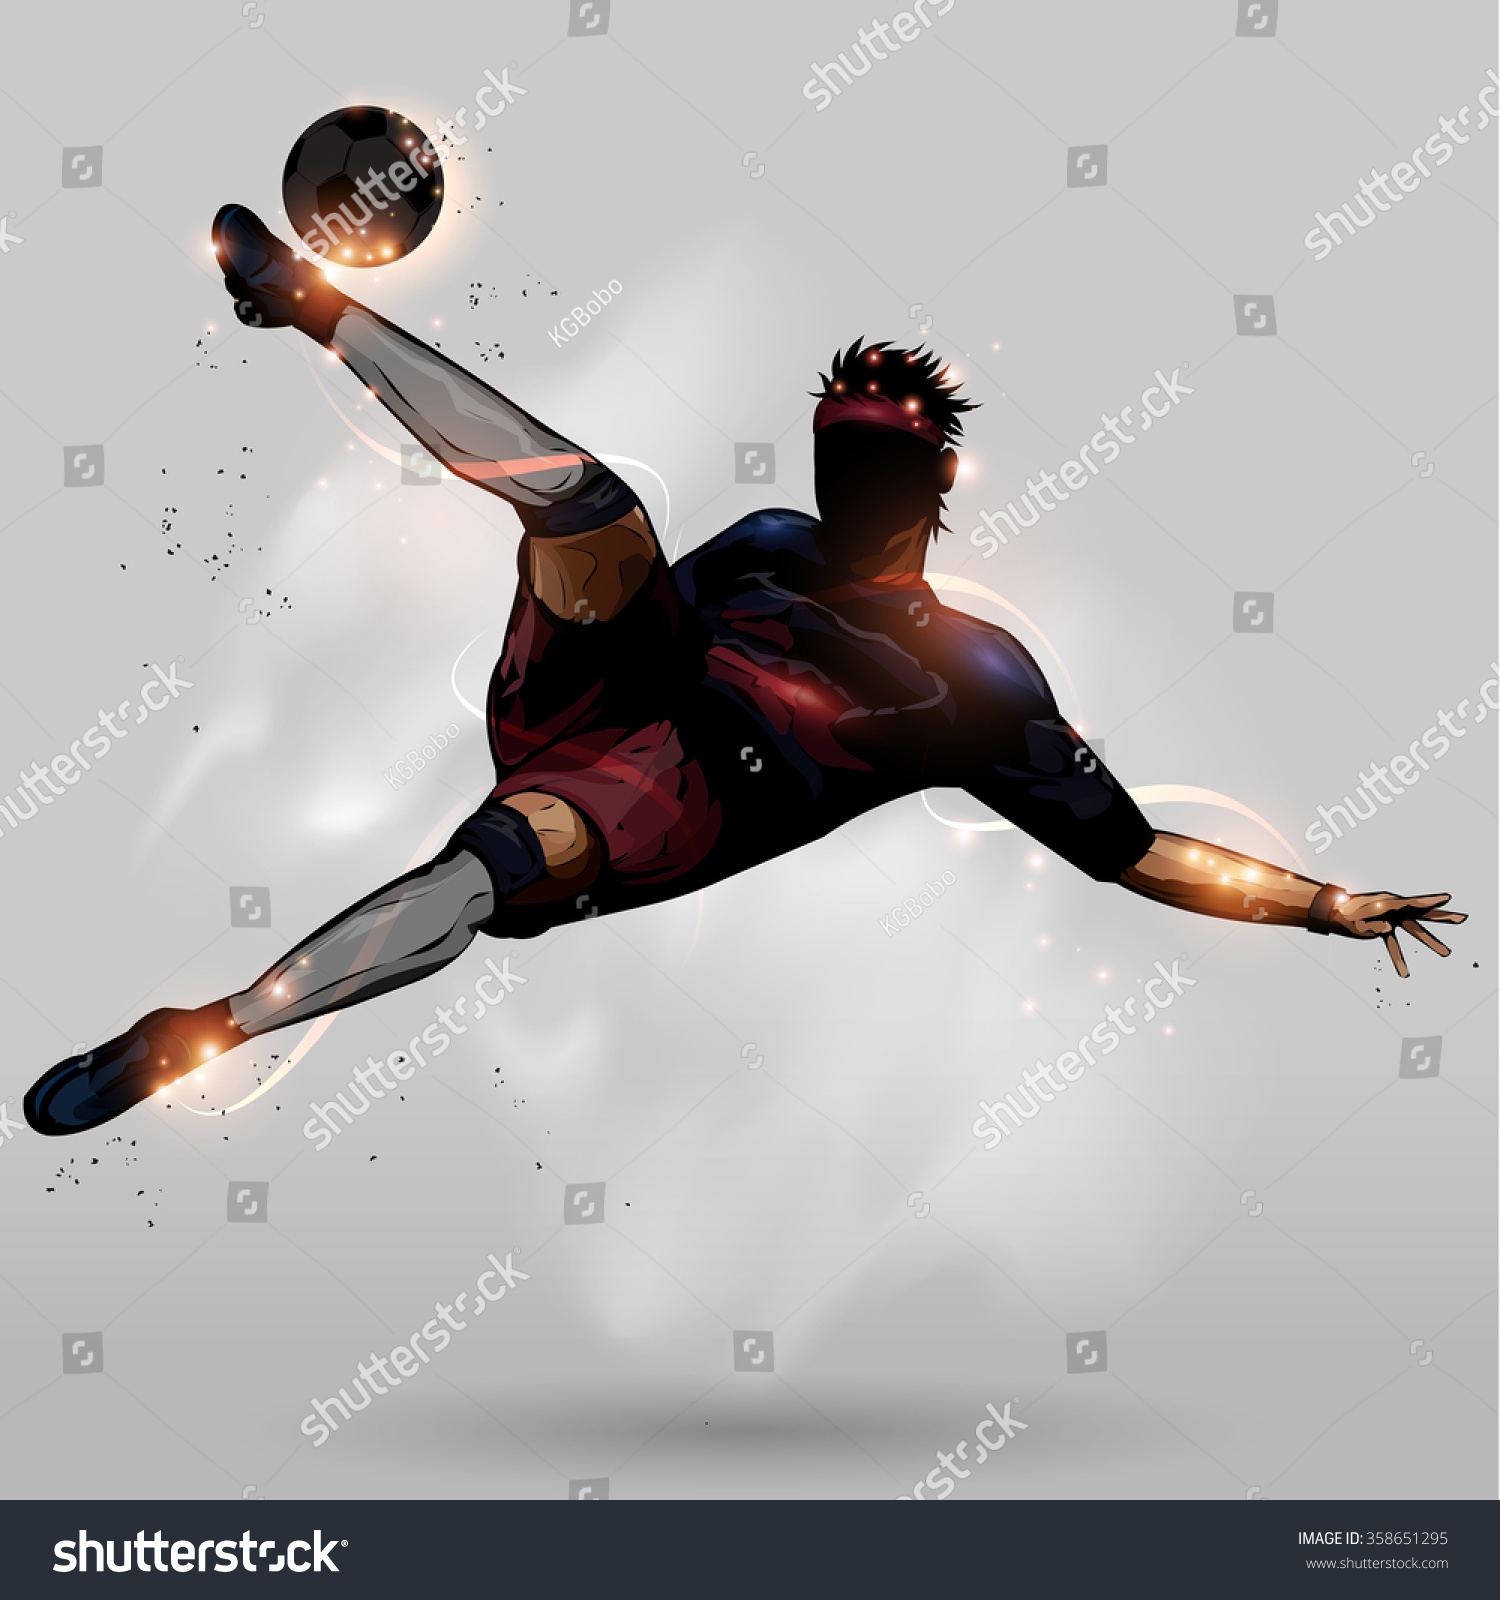 踢足球运动员跳硬\/头-人物,运动\/娱乐活动-海洛